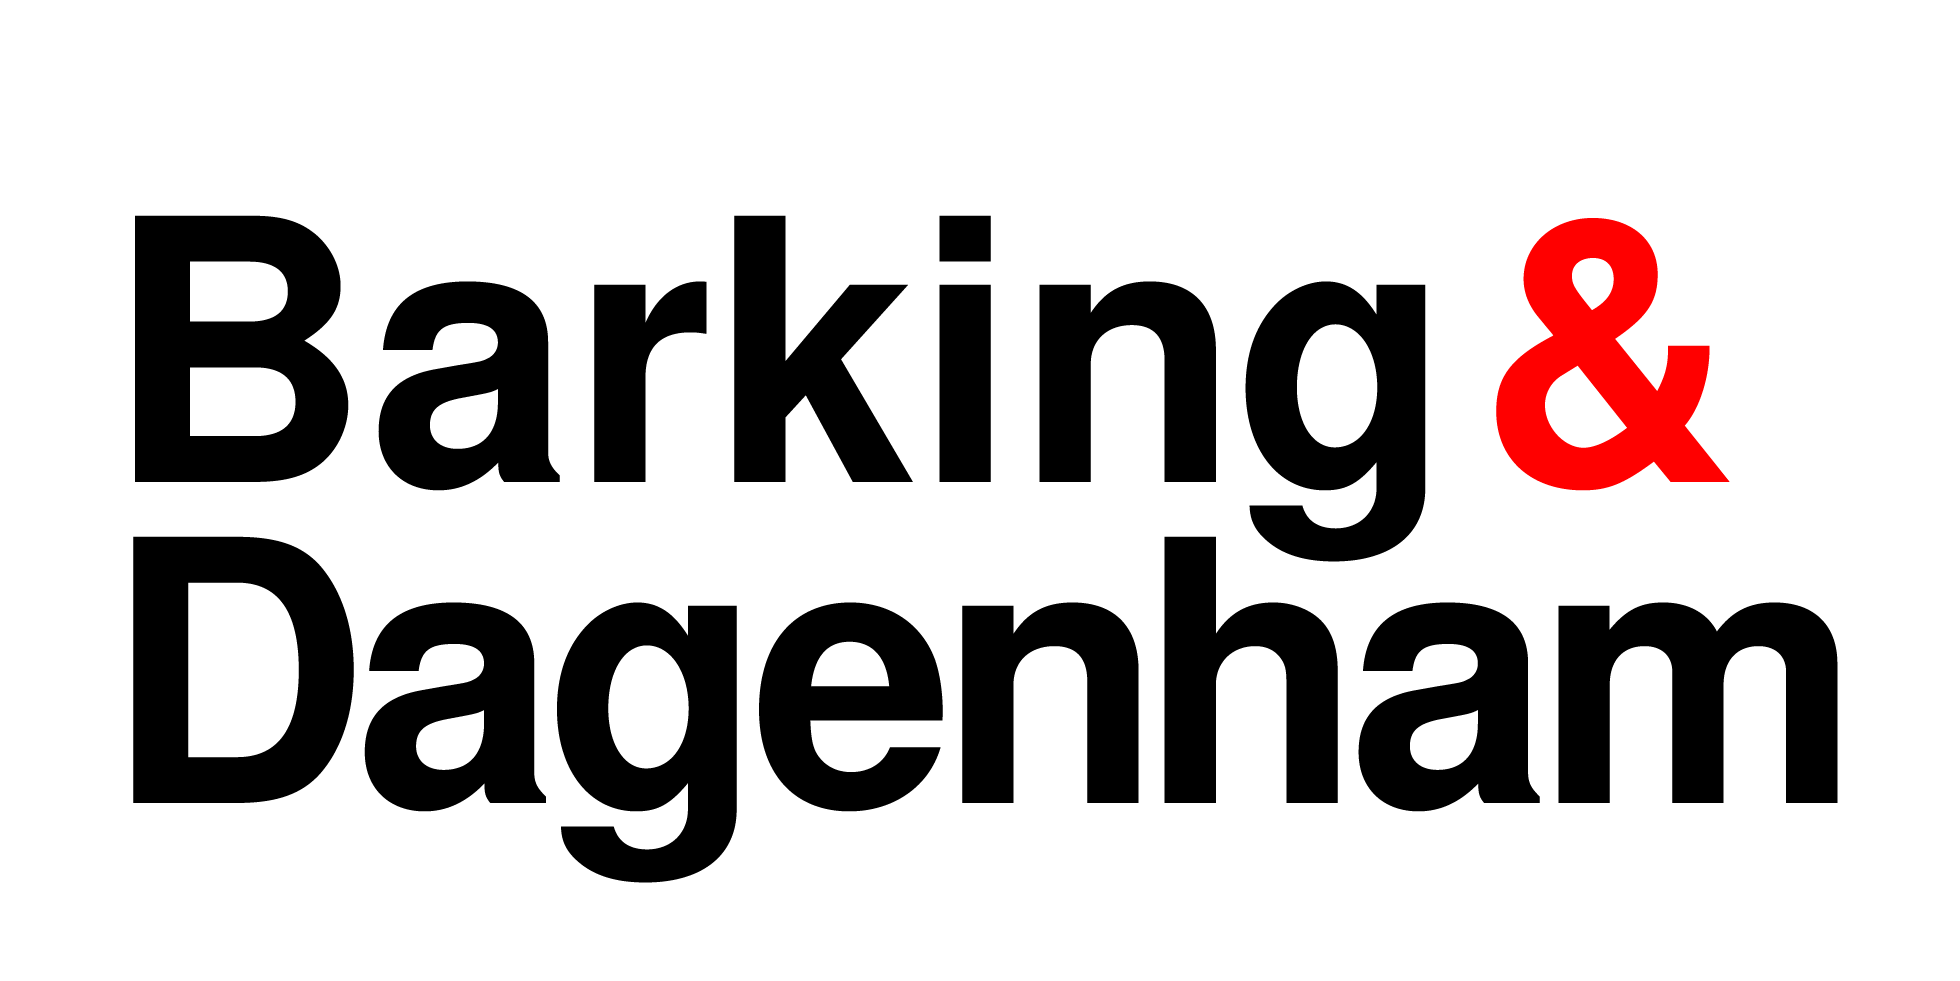 Barking & Dagenham logo in black and red